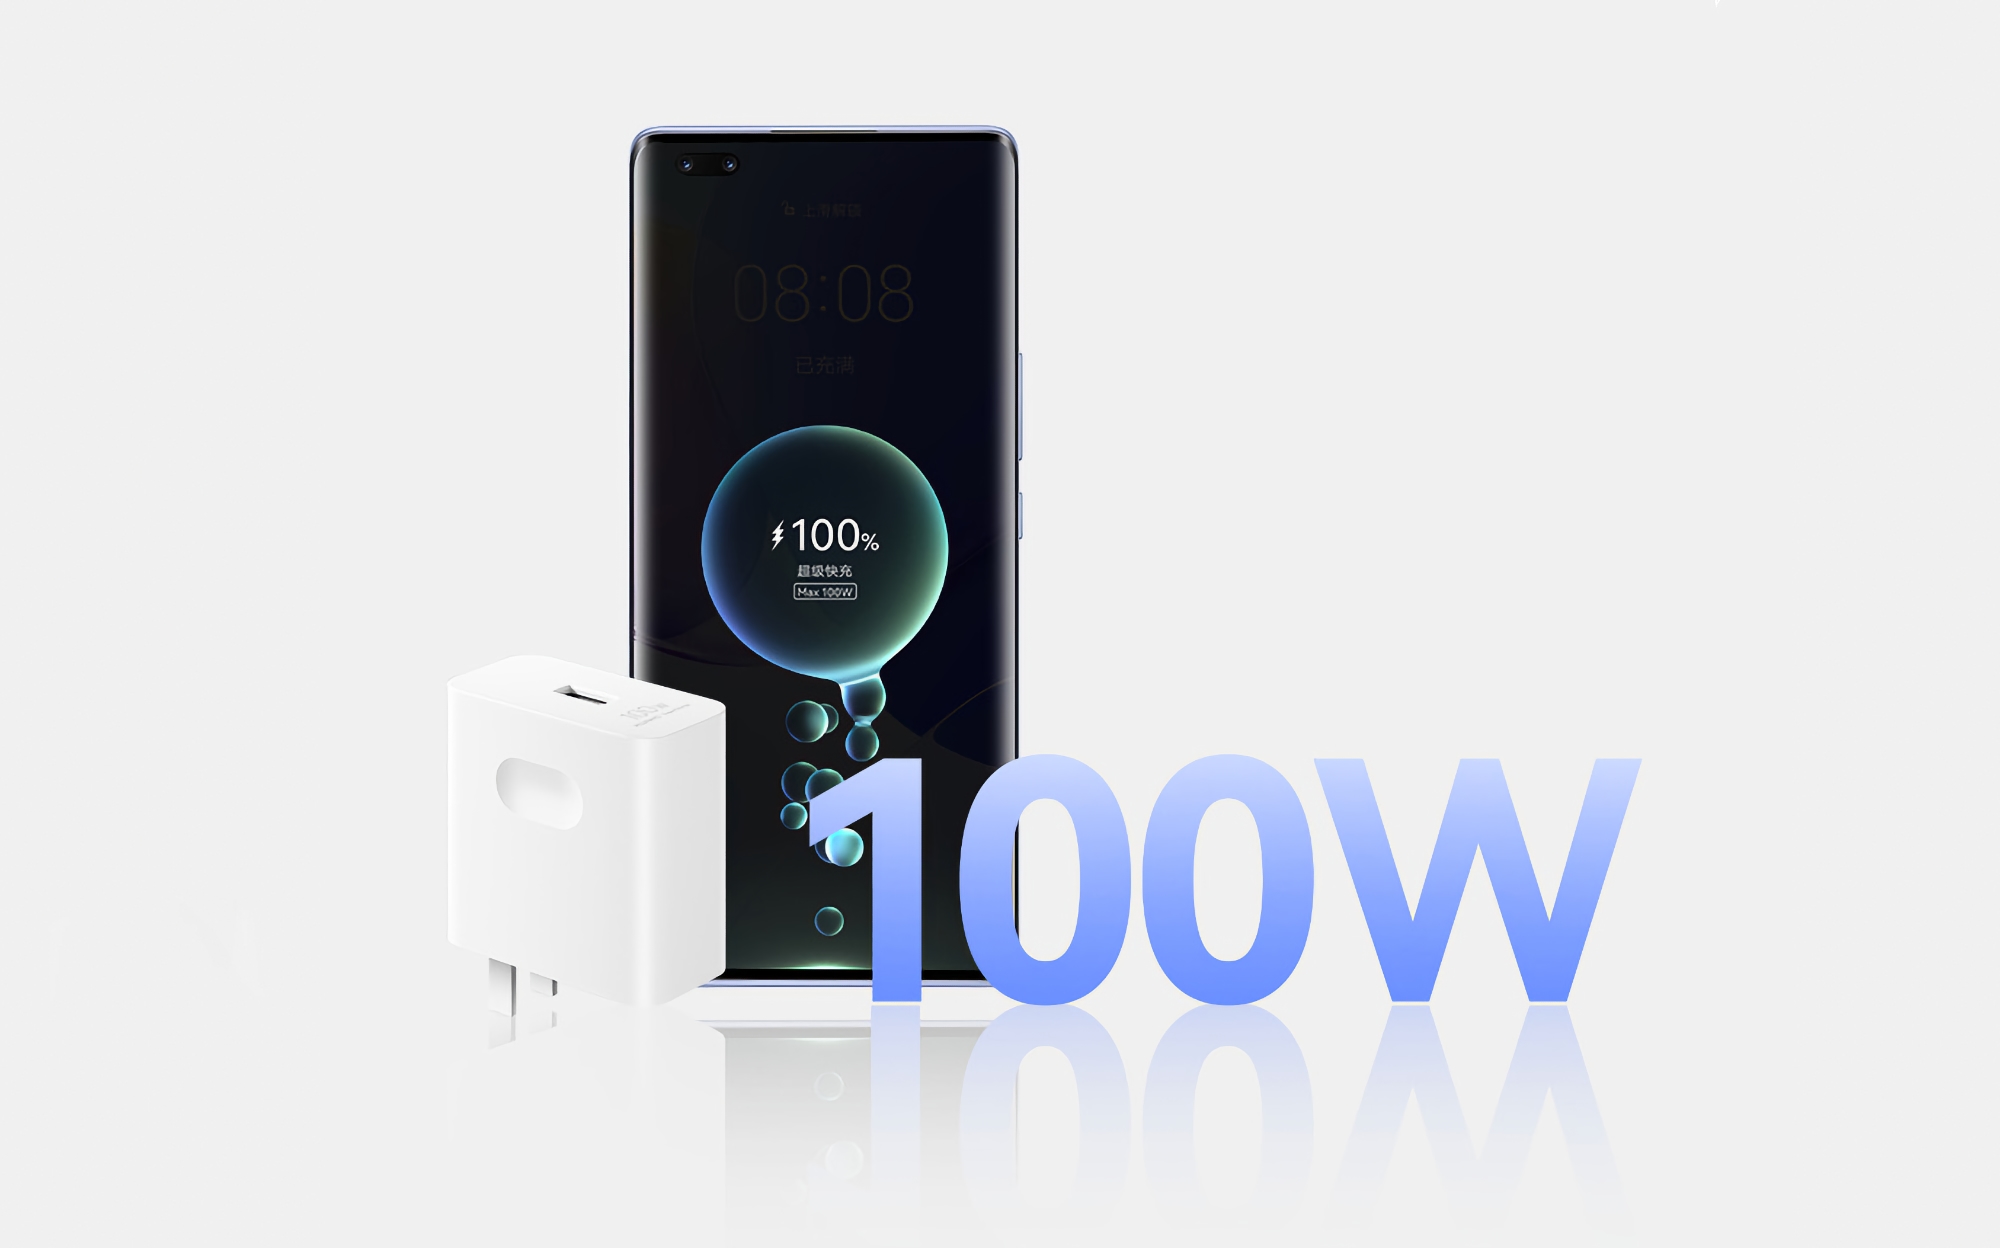 Dla smartfonów, tabletów i laptopów: Huawei ogłosił 100-watowy zasilacz za 63 $